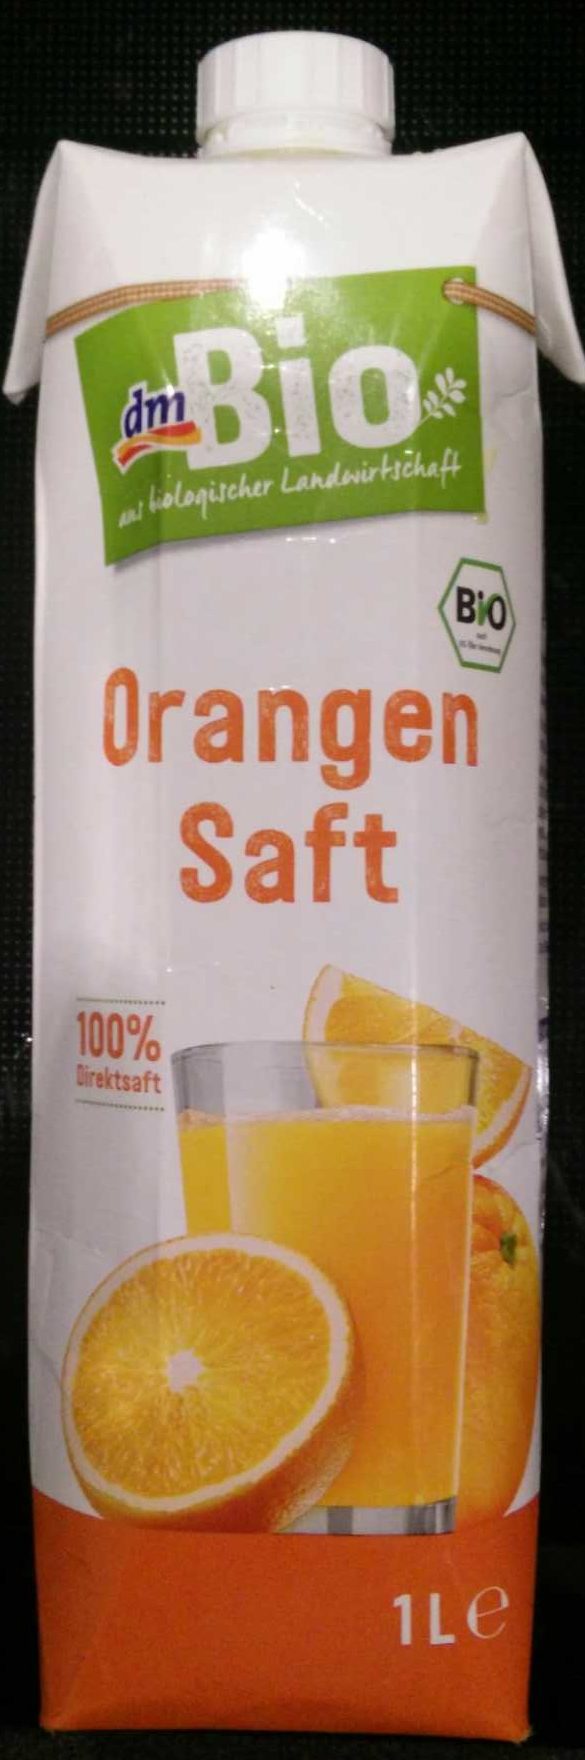 Orangen Saft - Producto - de